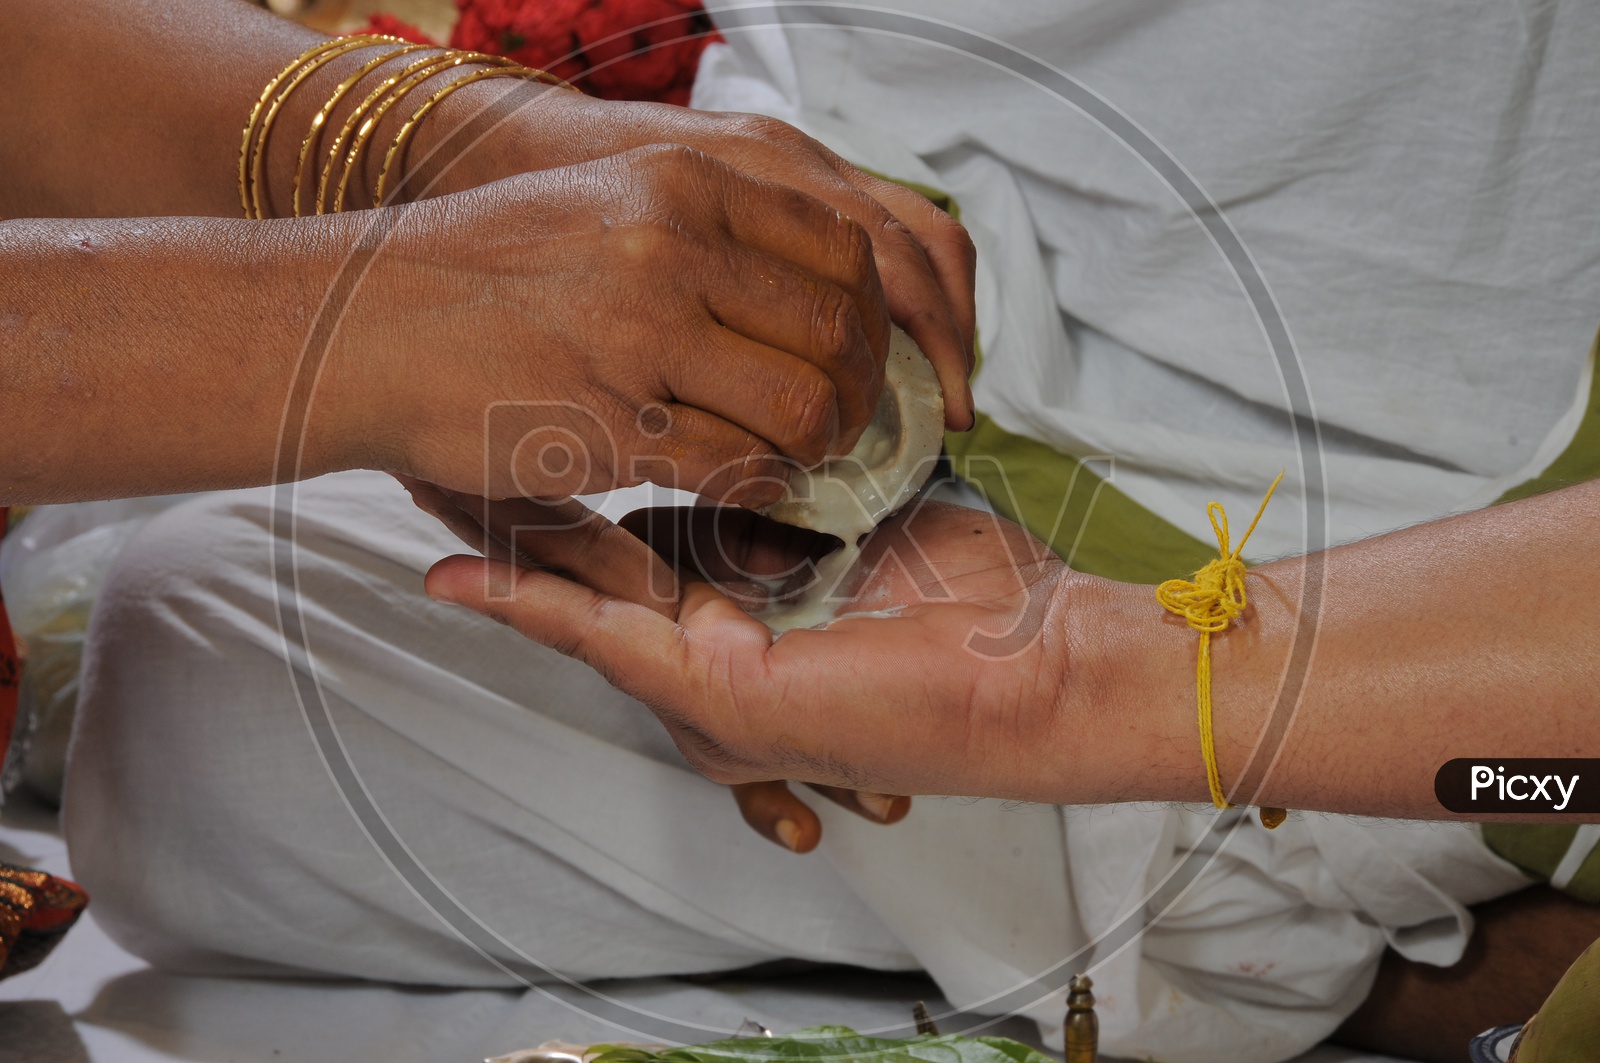 Indian Hindu Wedding Scenes